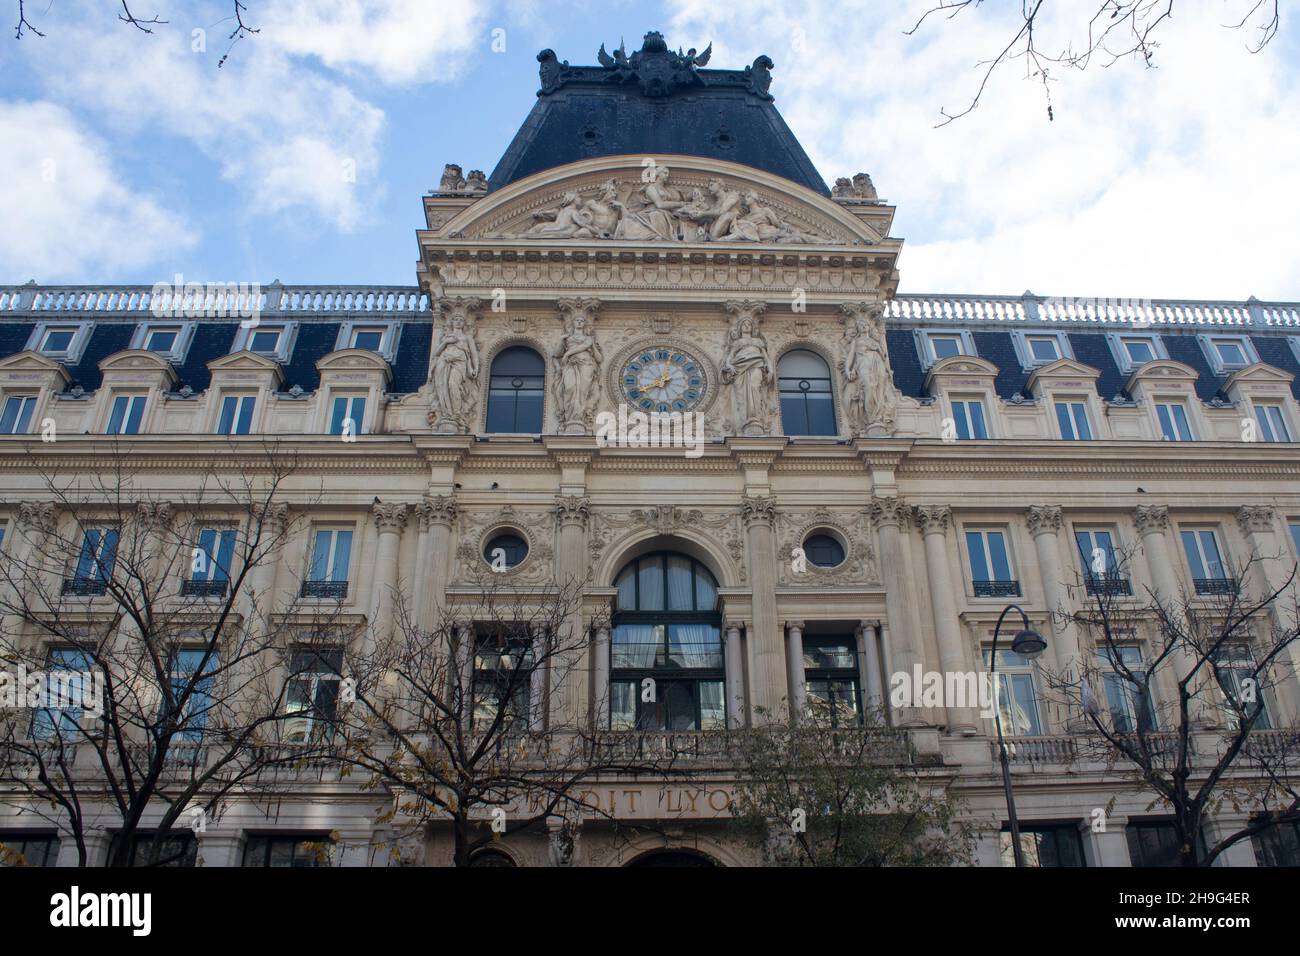 The central pavilion of Le Centorial Crédit Lyonnais - Hôtel des Italiens - the bank's former headquarters, Boulevard des Italiens, Paris Framce Stock Photo